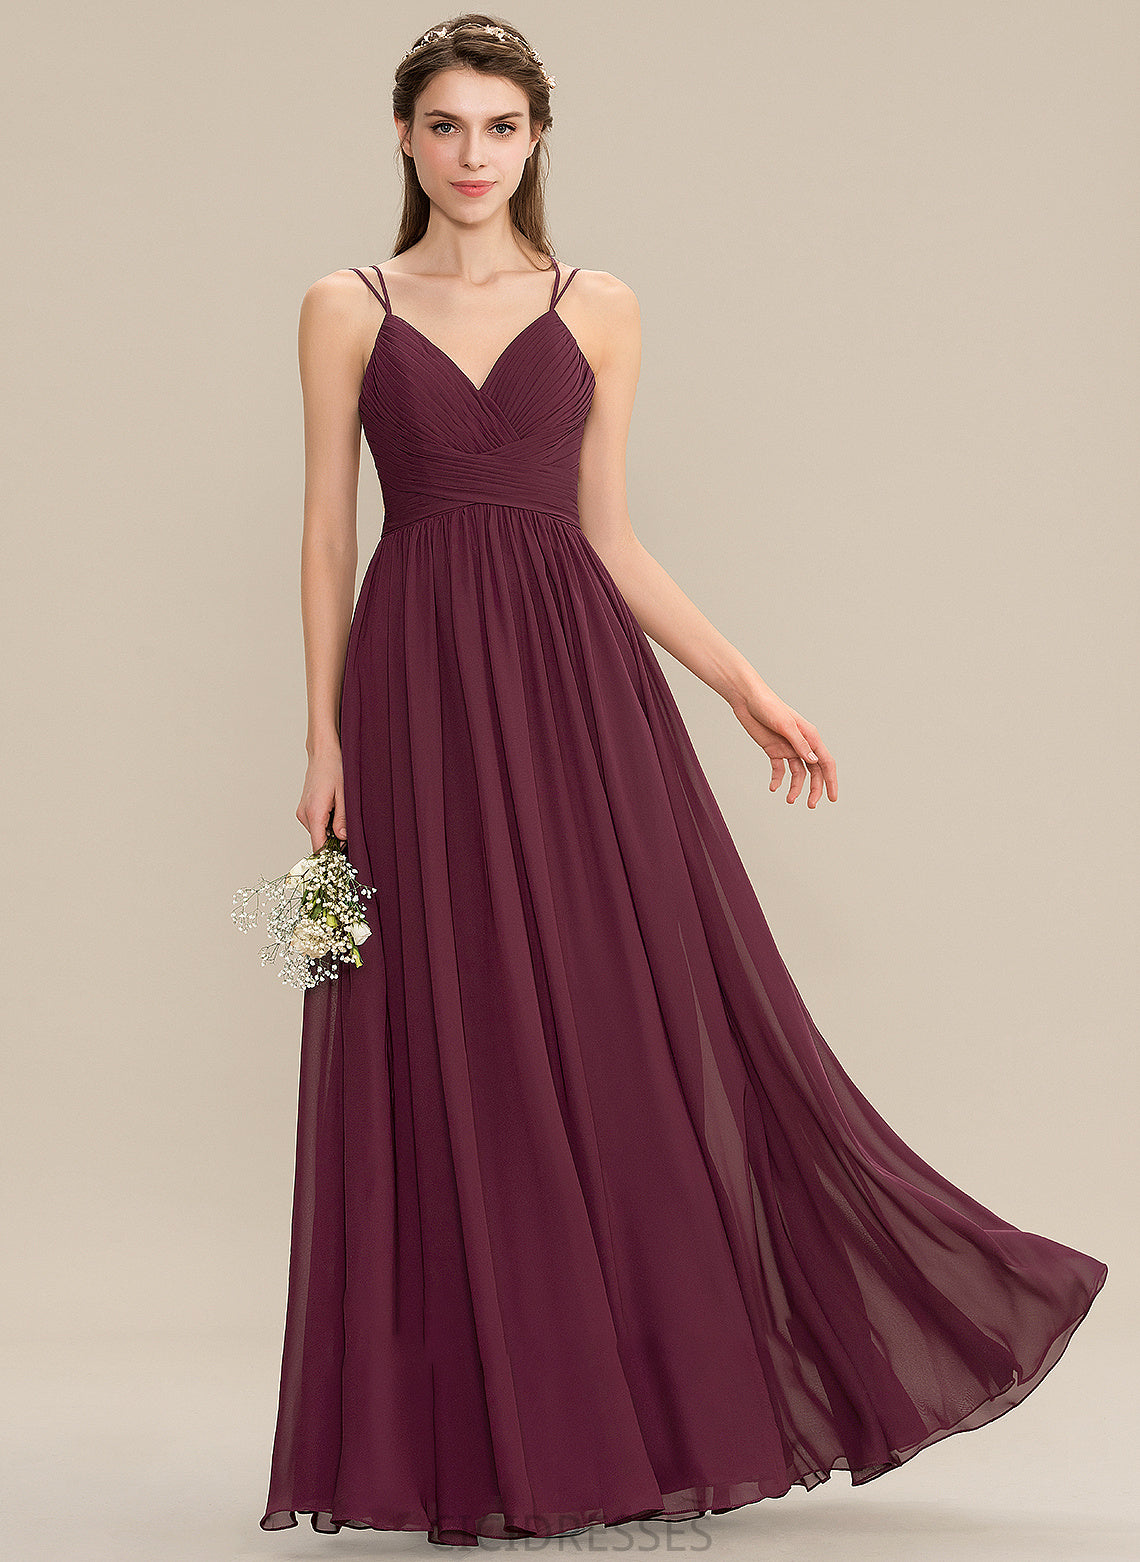 Fabric Silhouette V-neck Embellishment Ruffle Neckline Length Floor-Length A-Line Celeste Sleeveless A-Line/Princess Bridesmaid Dresses